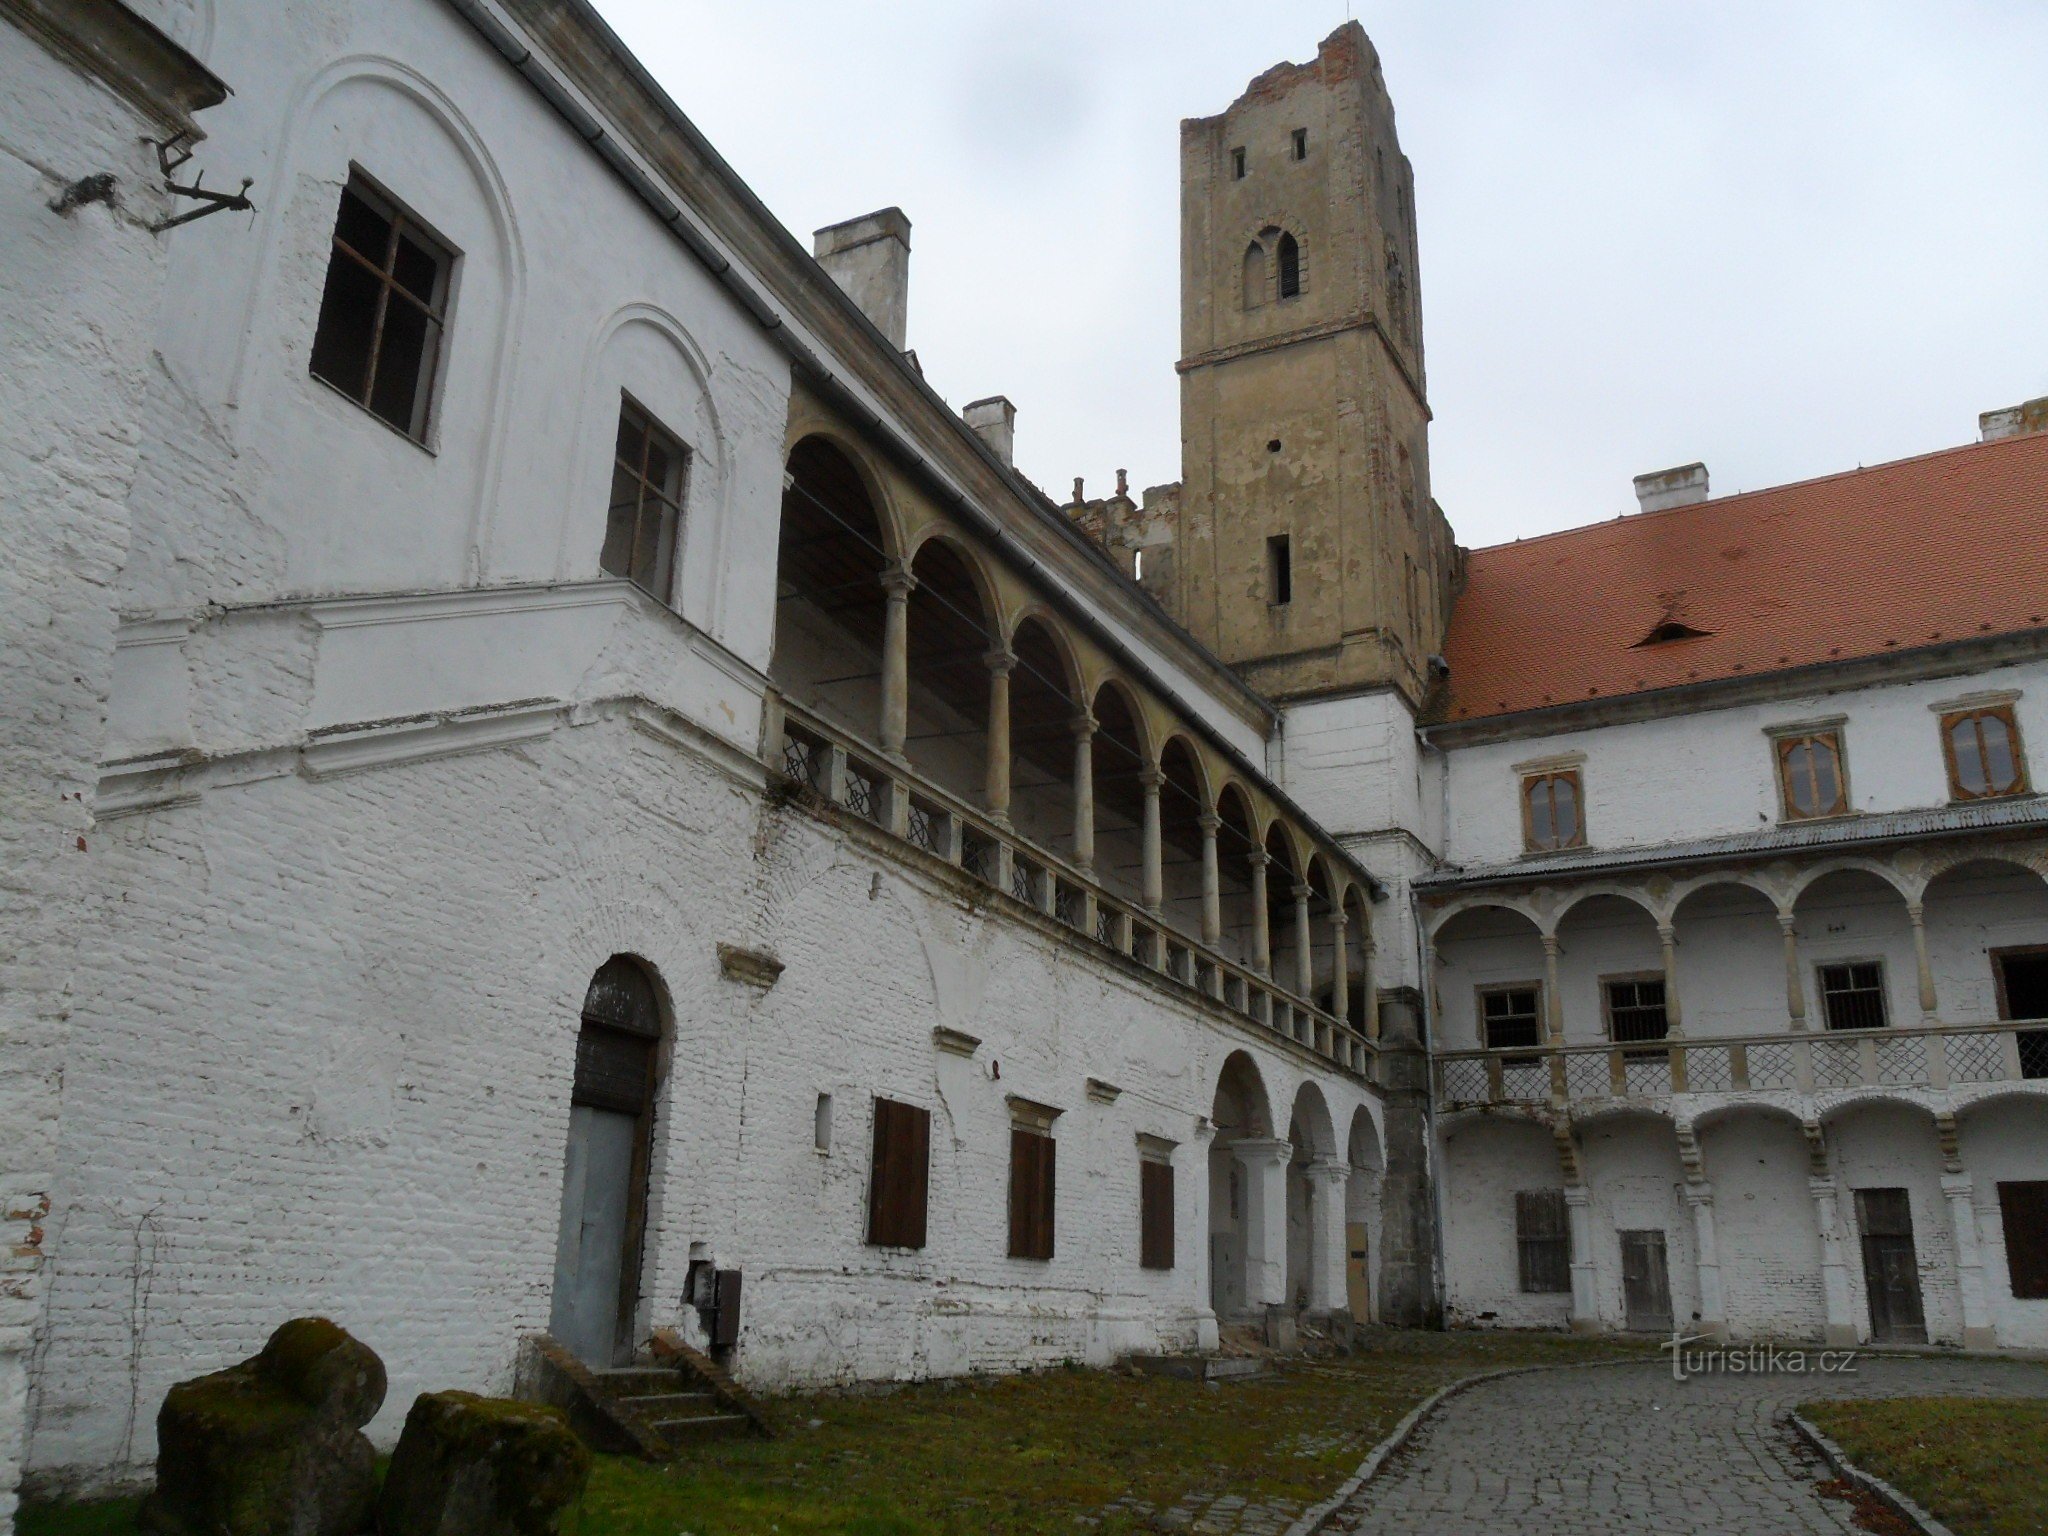 Břeclav - castle